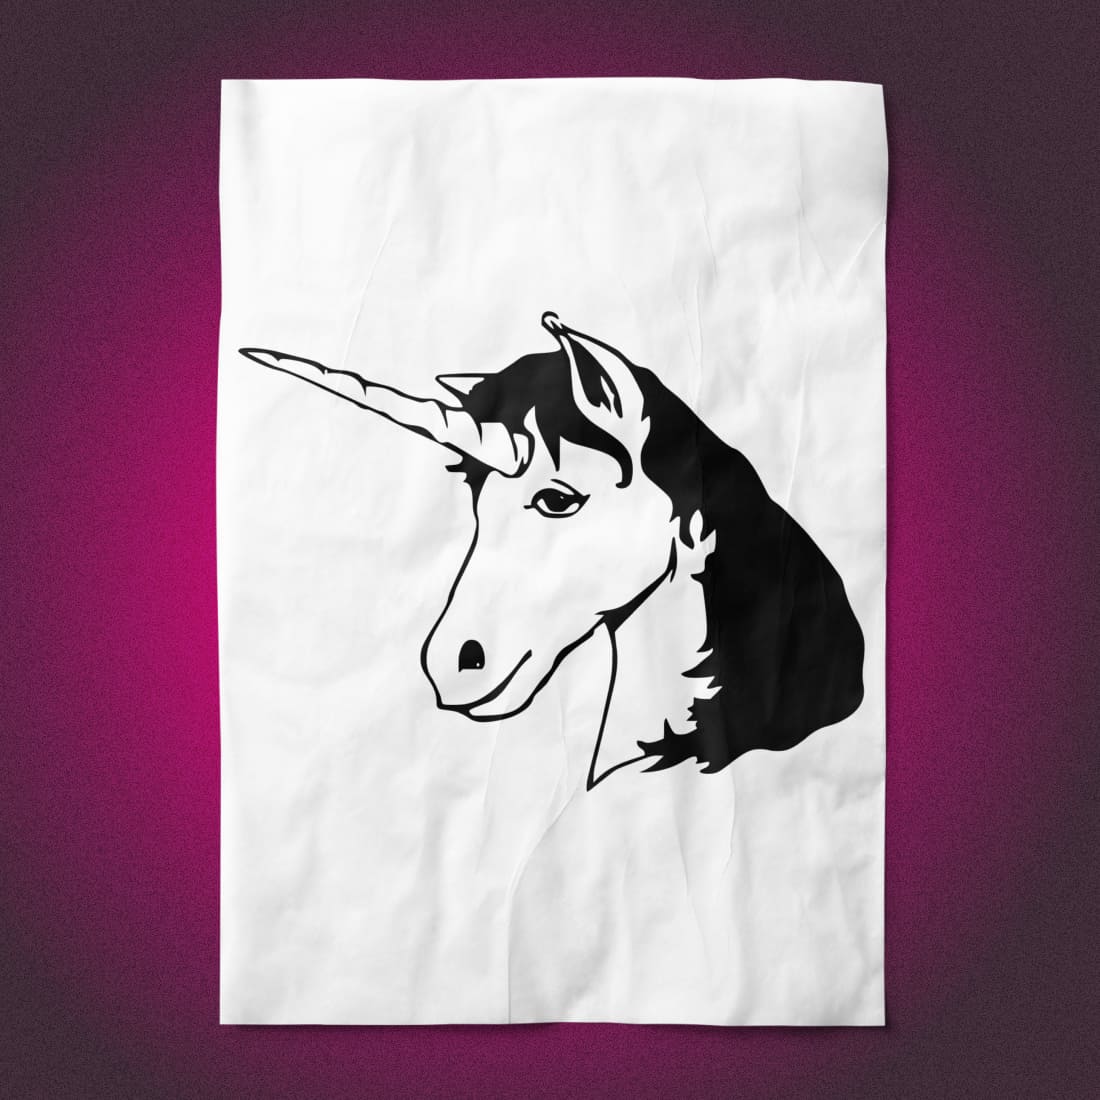 Animal Horse Mythical Unicorn on the Paper.